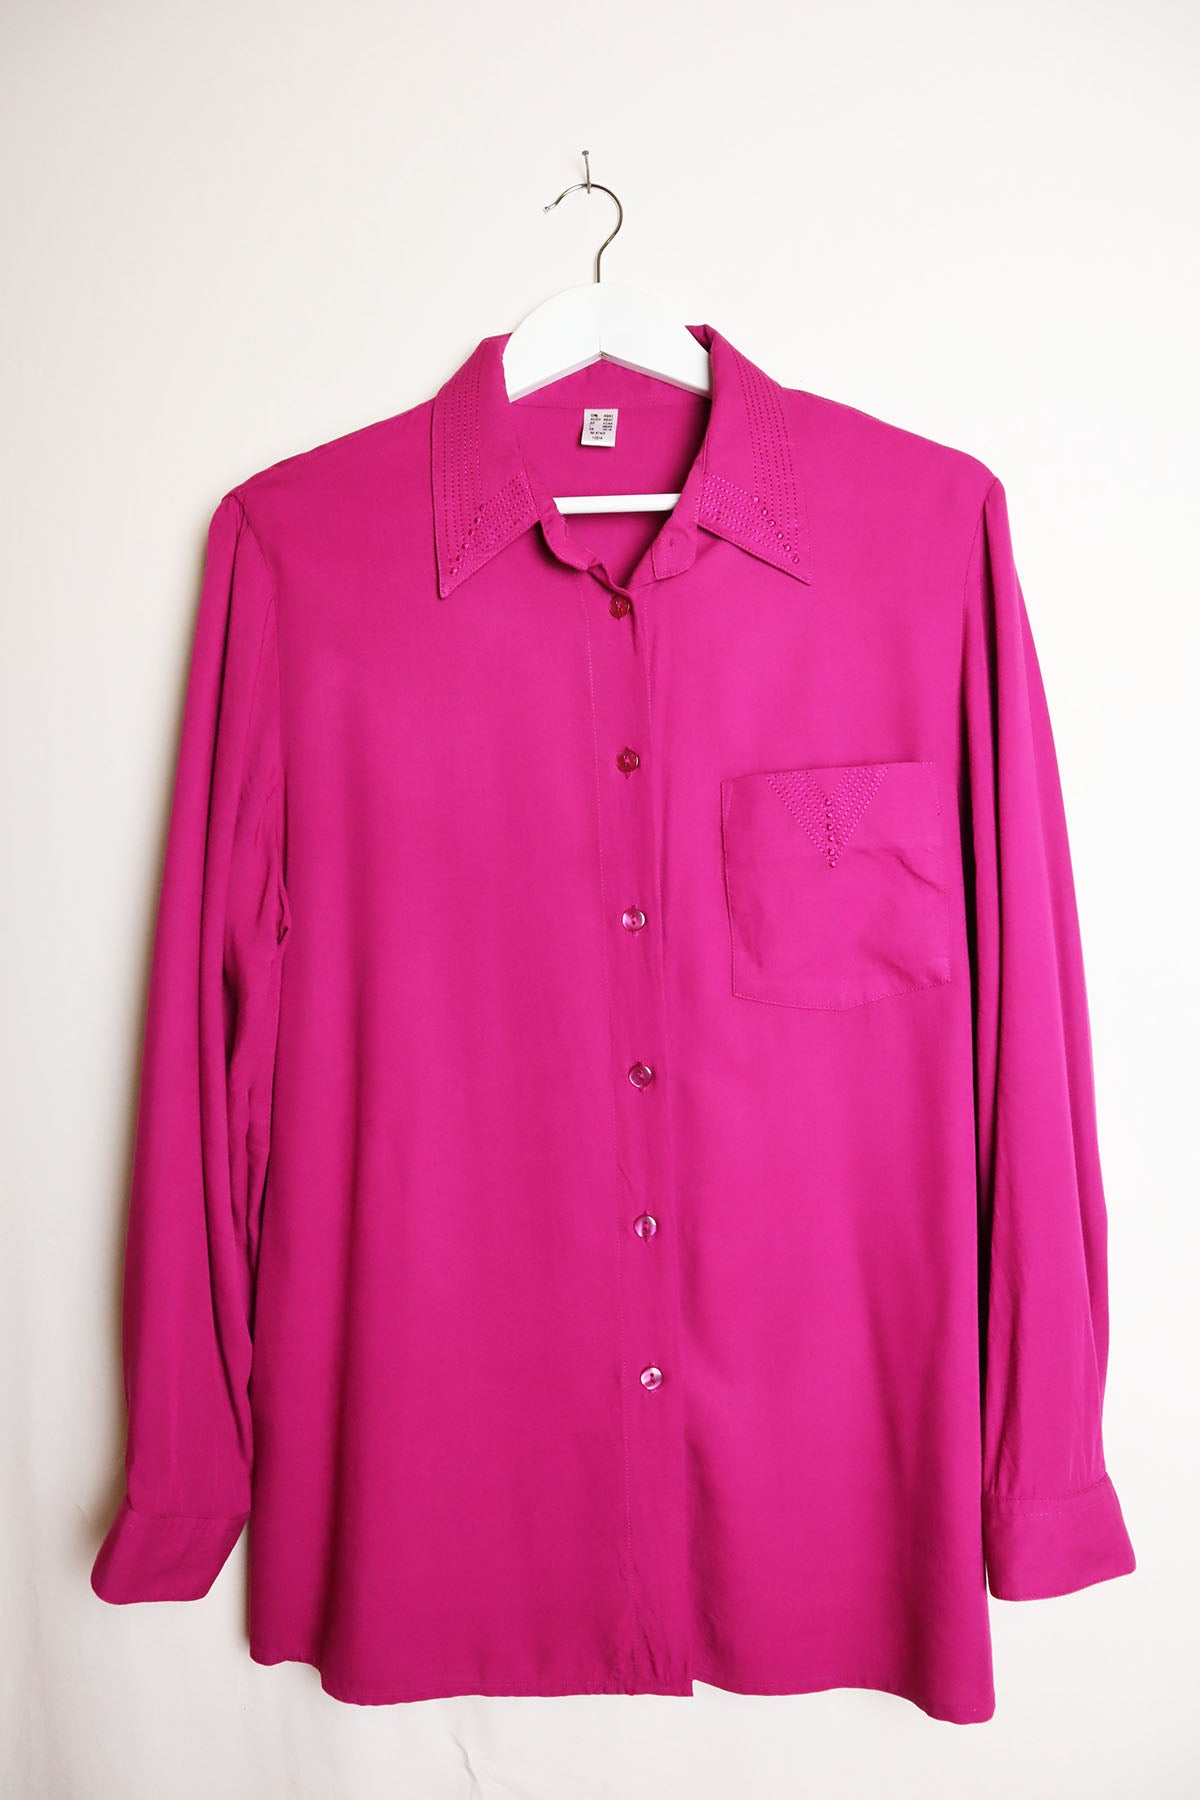 Bluse Vintage Pink ( Gr. M )